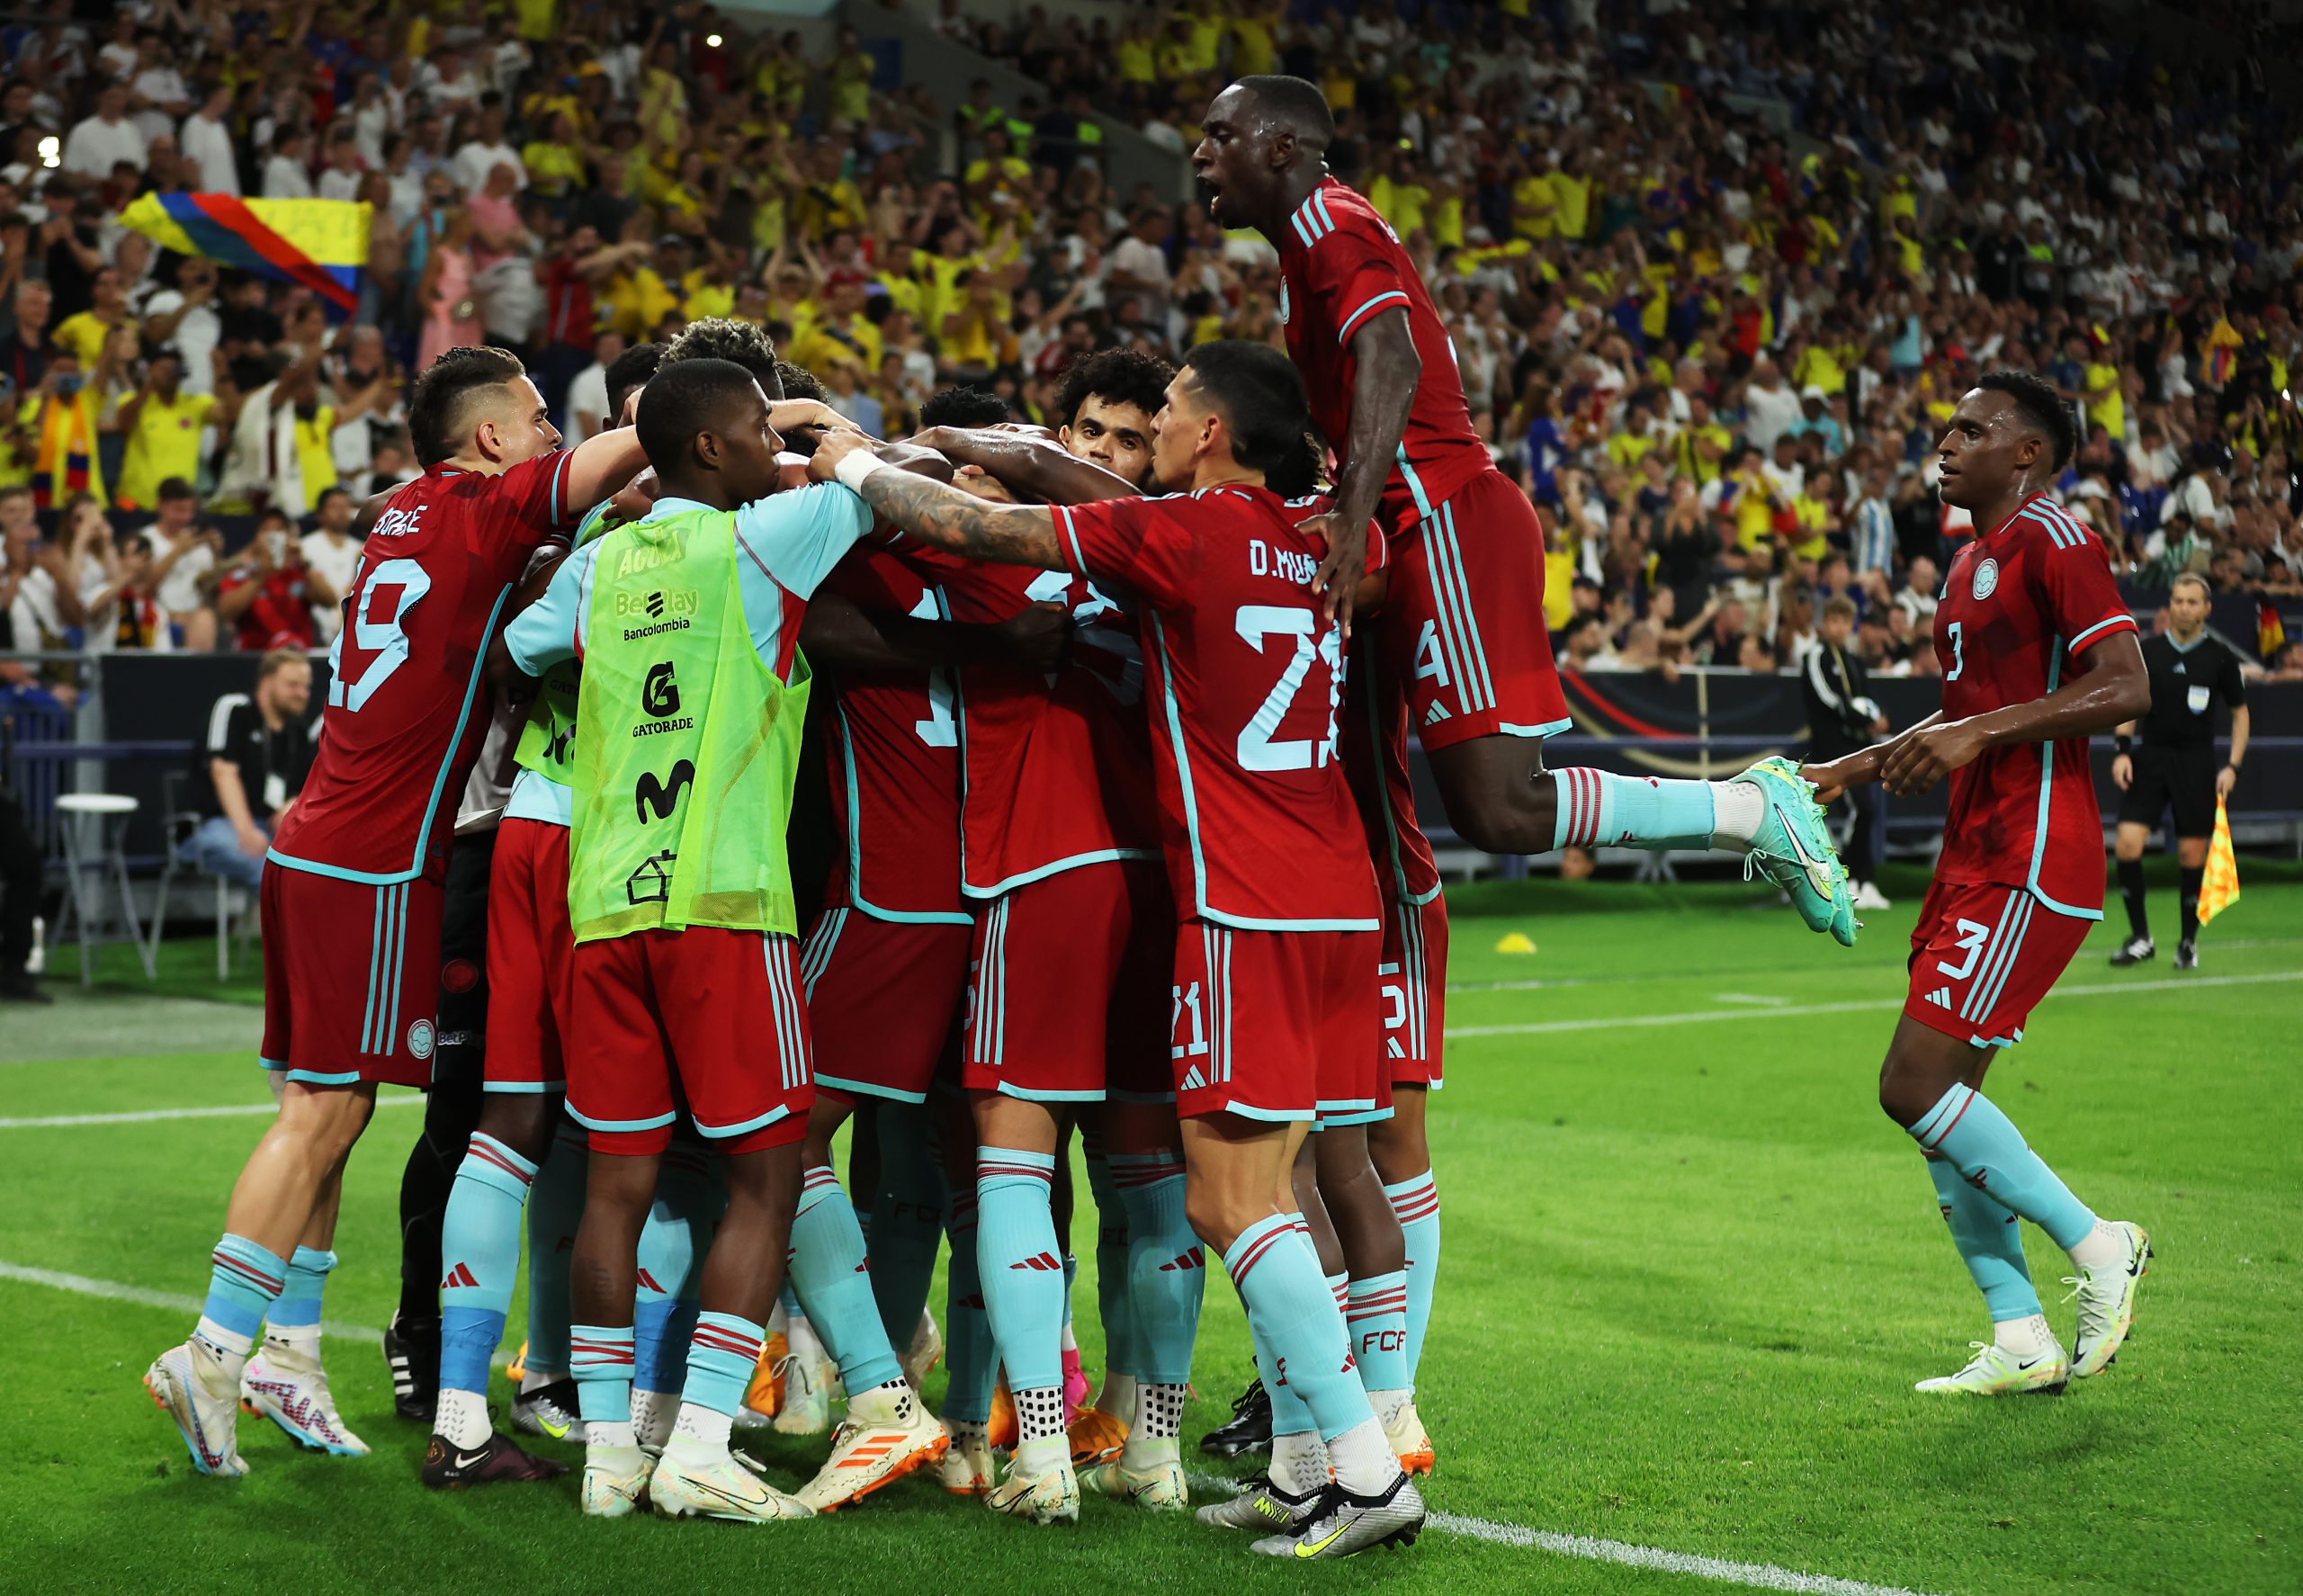 Colômbia marcou os gols da vitória sobre a Alemanha no segundo tempo (Foto: Alex Grimm/Getty Images)